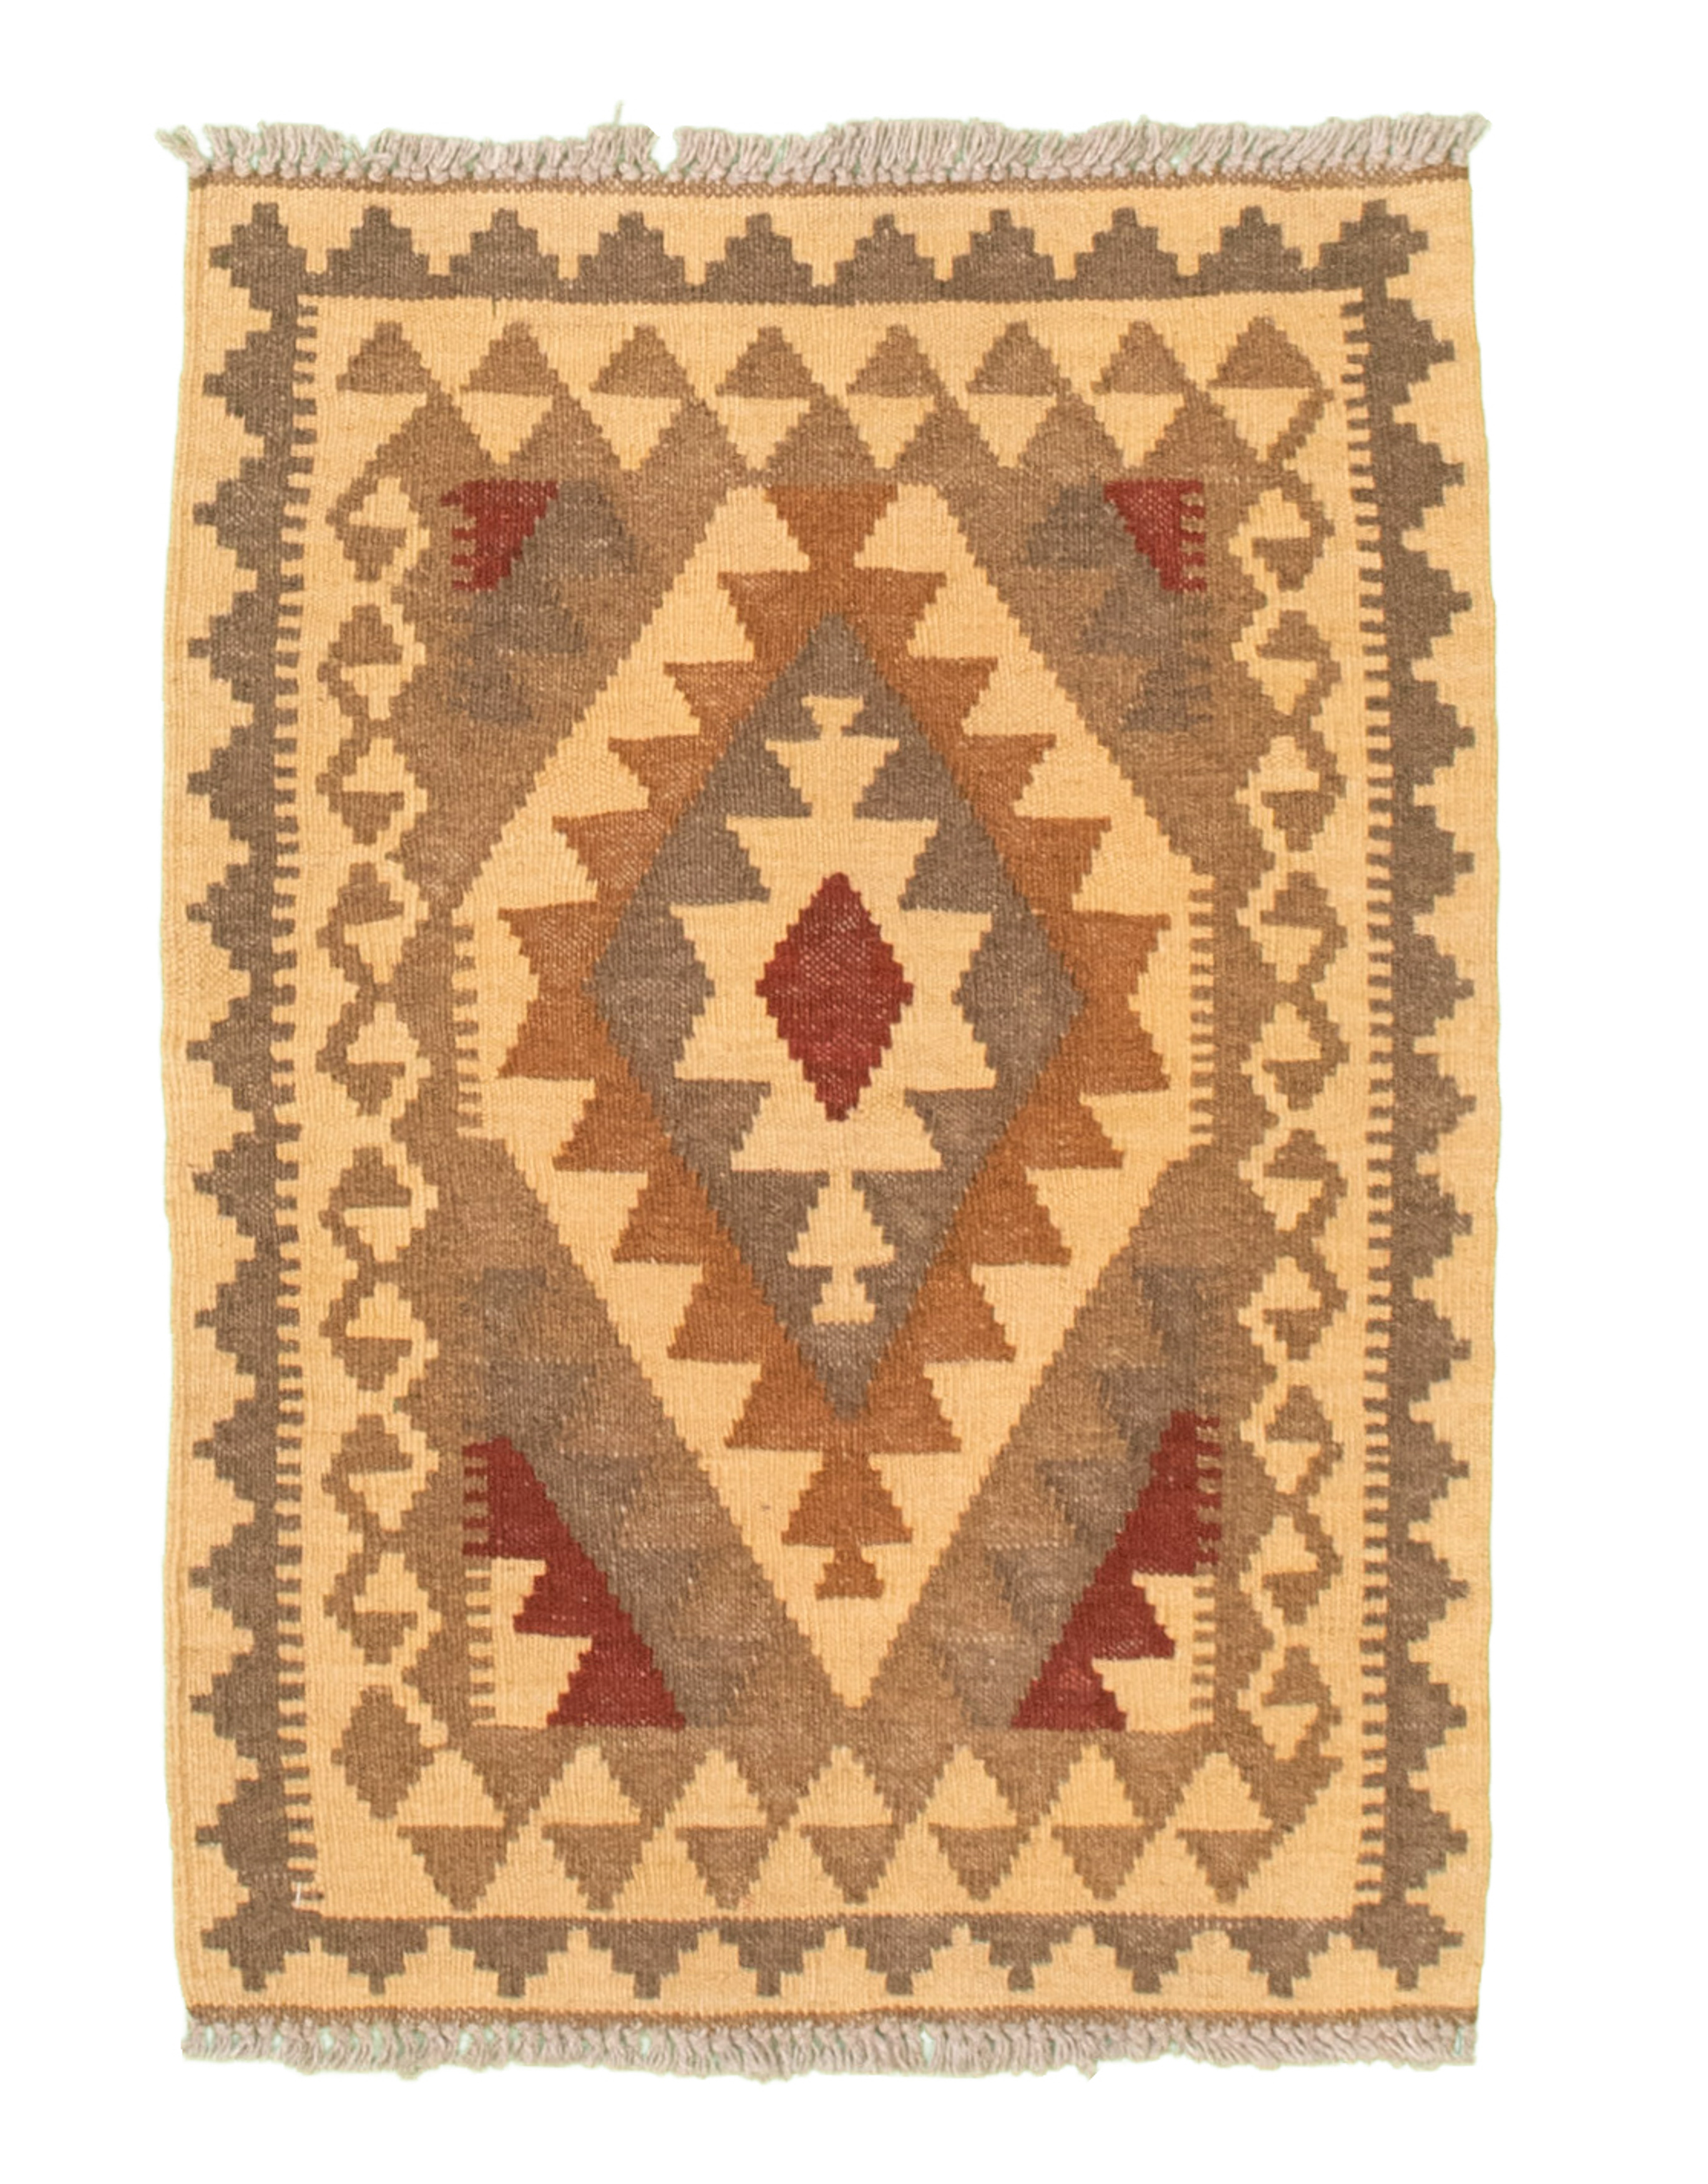 Hand woven Kashkoli FW Brown, Cream Cotton Kilim 2'0" x 2'9" Size: 2'0" x 2'9"  